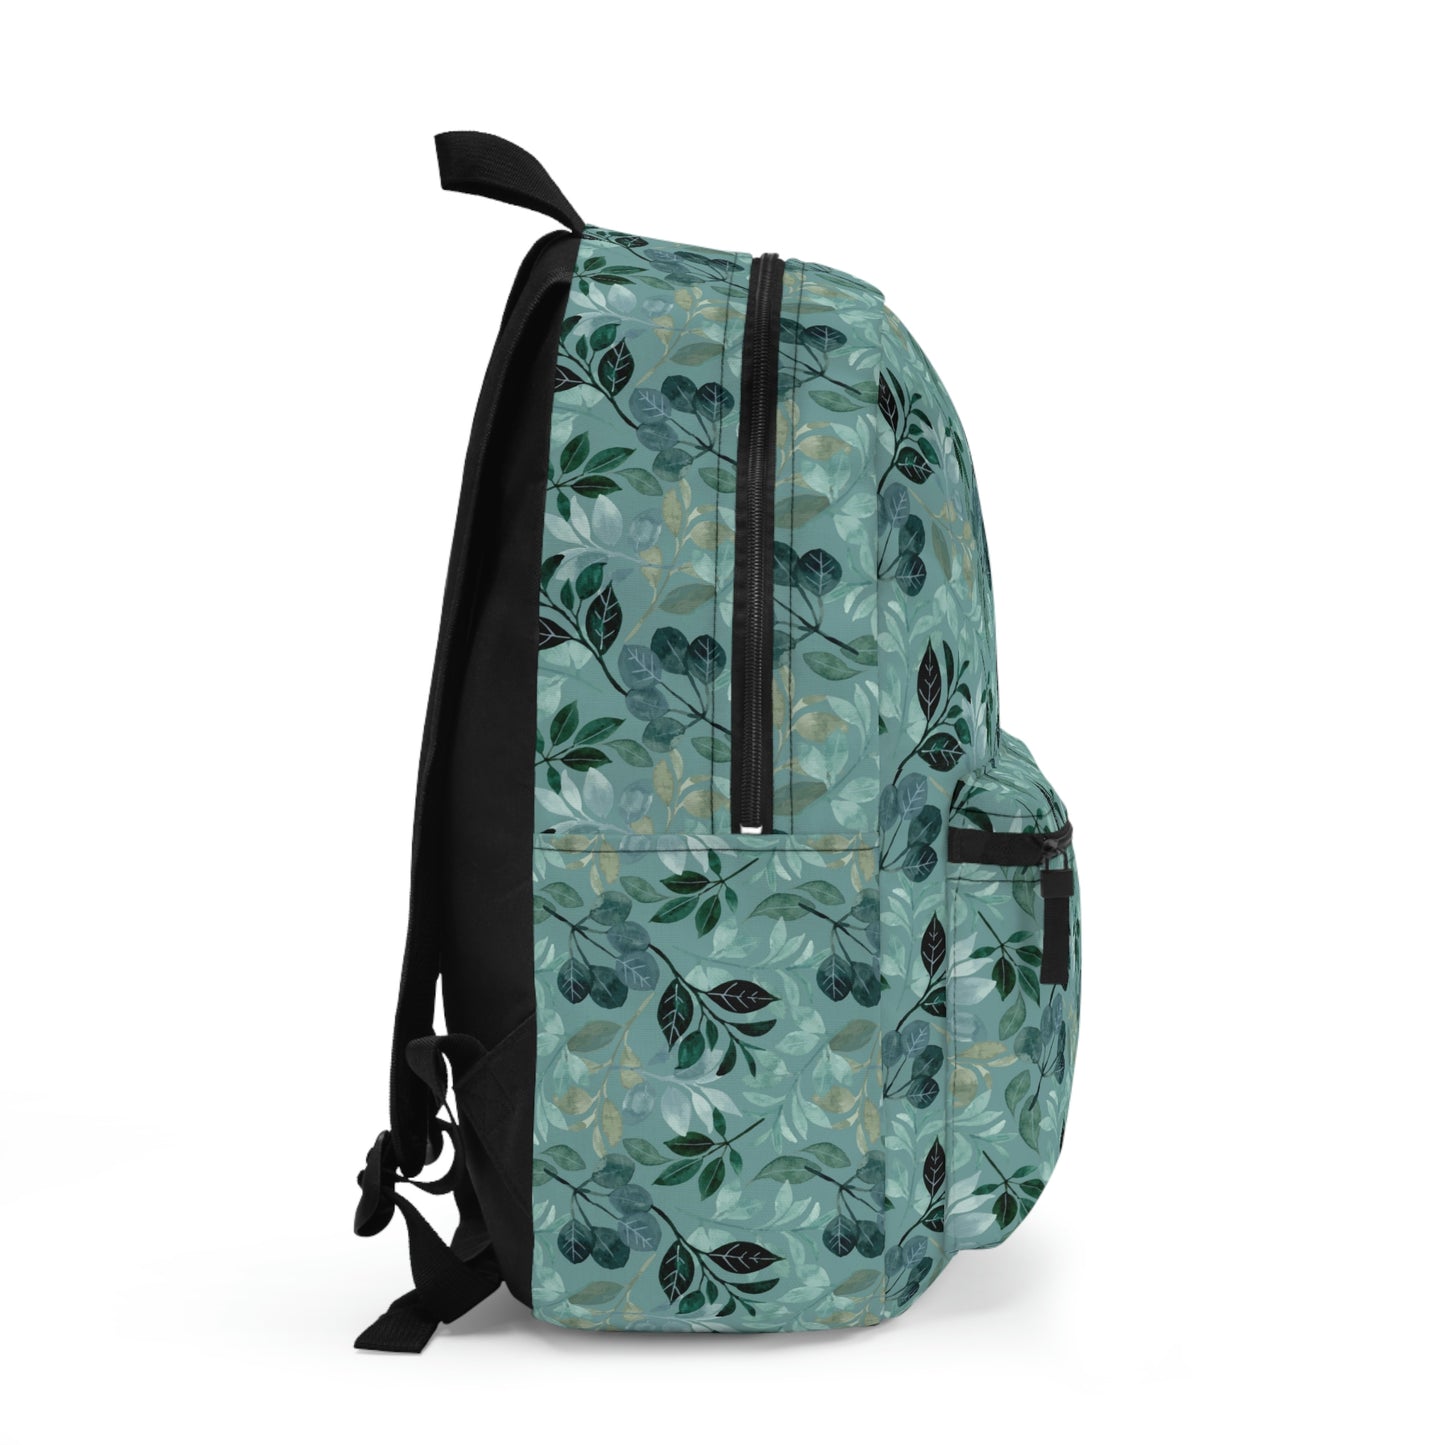 Teal Backpack / Leaf Print Backpack / Carry On Bag